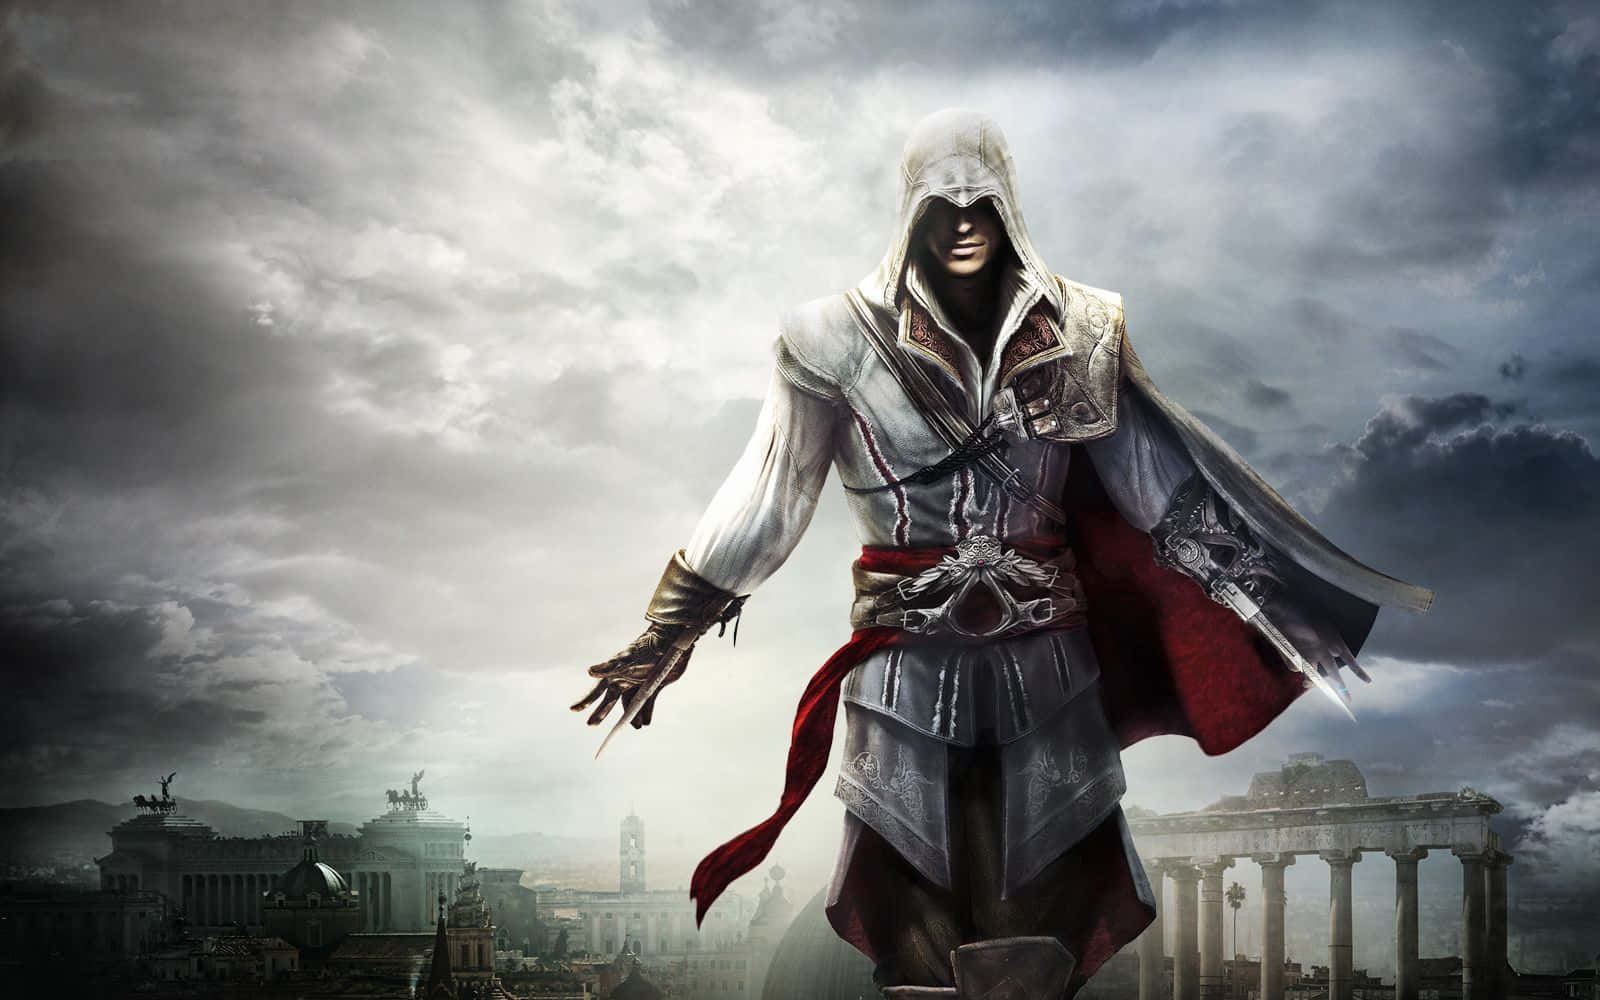 Ezio Auditore da Firenze, a master assassin in Assassin's Creed Wallpaper